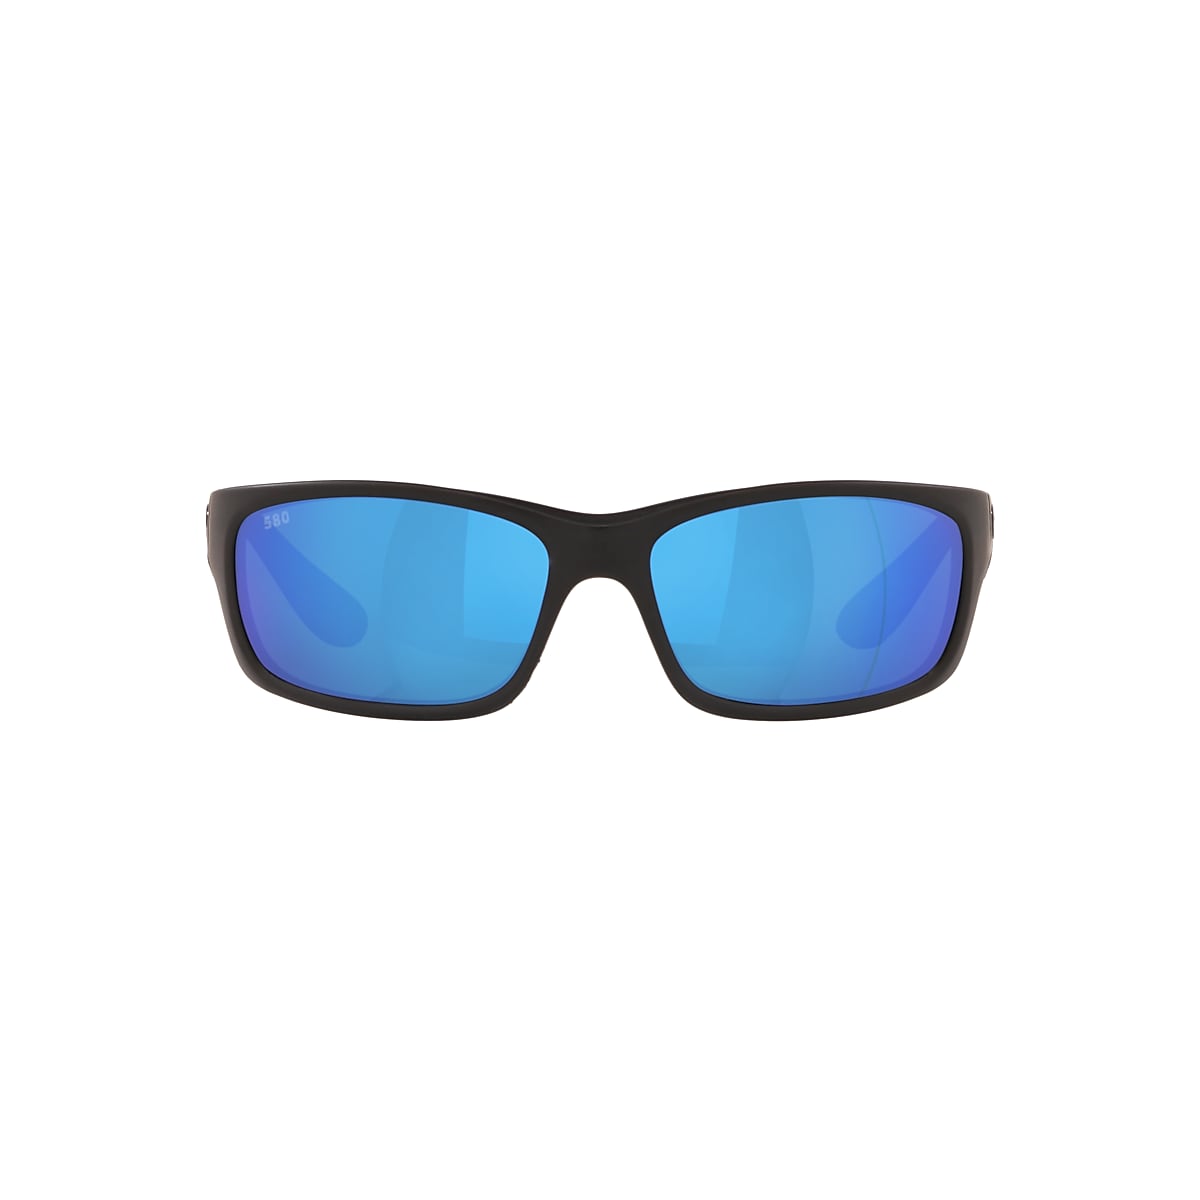 Costa Del Mar Jose Sunglasses Blackout / Blue Mirror 580G